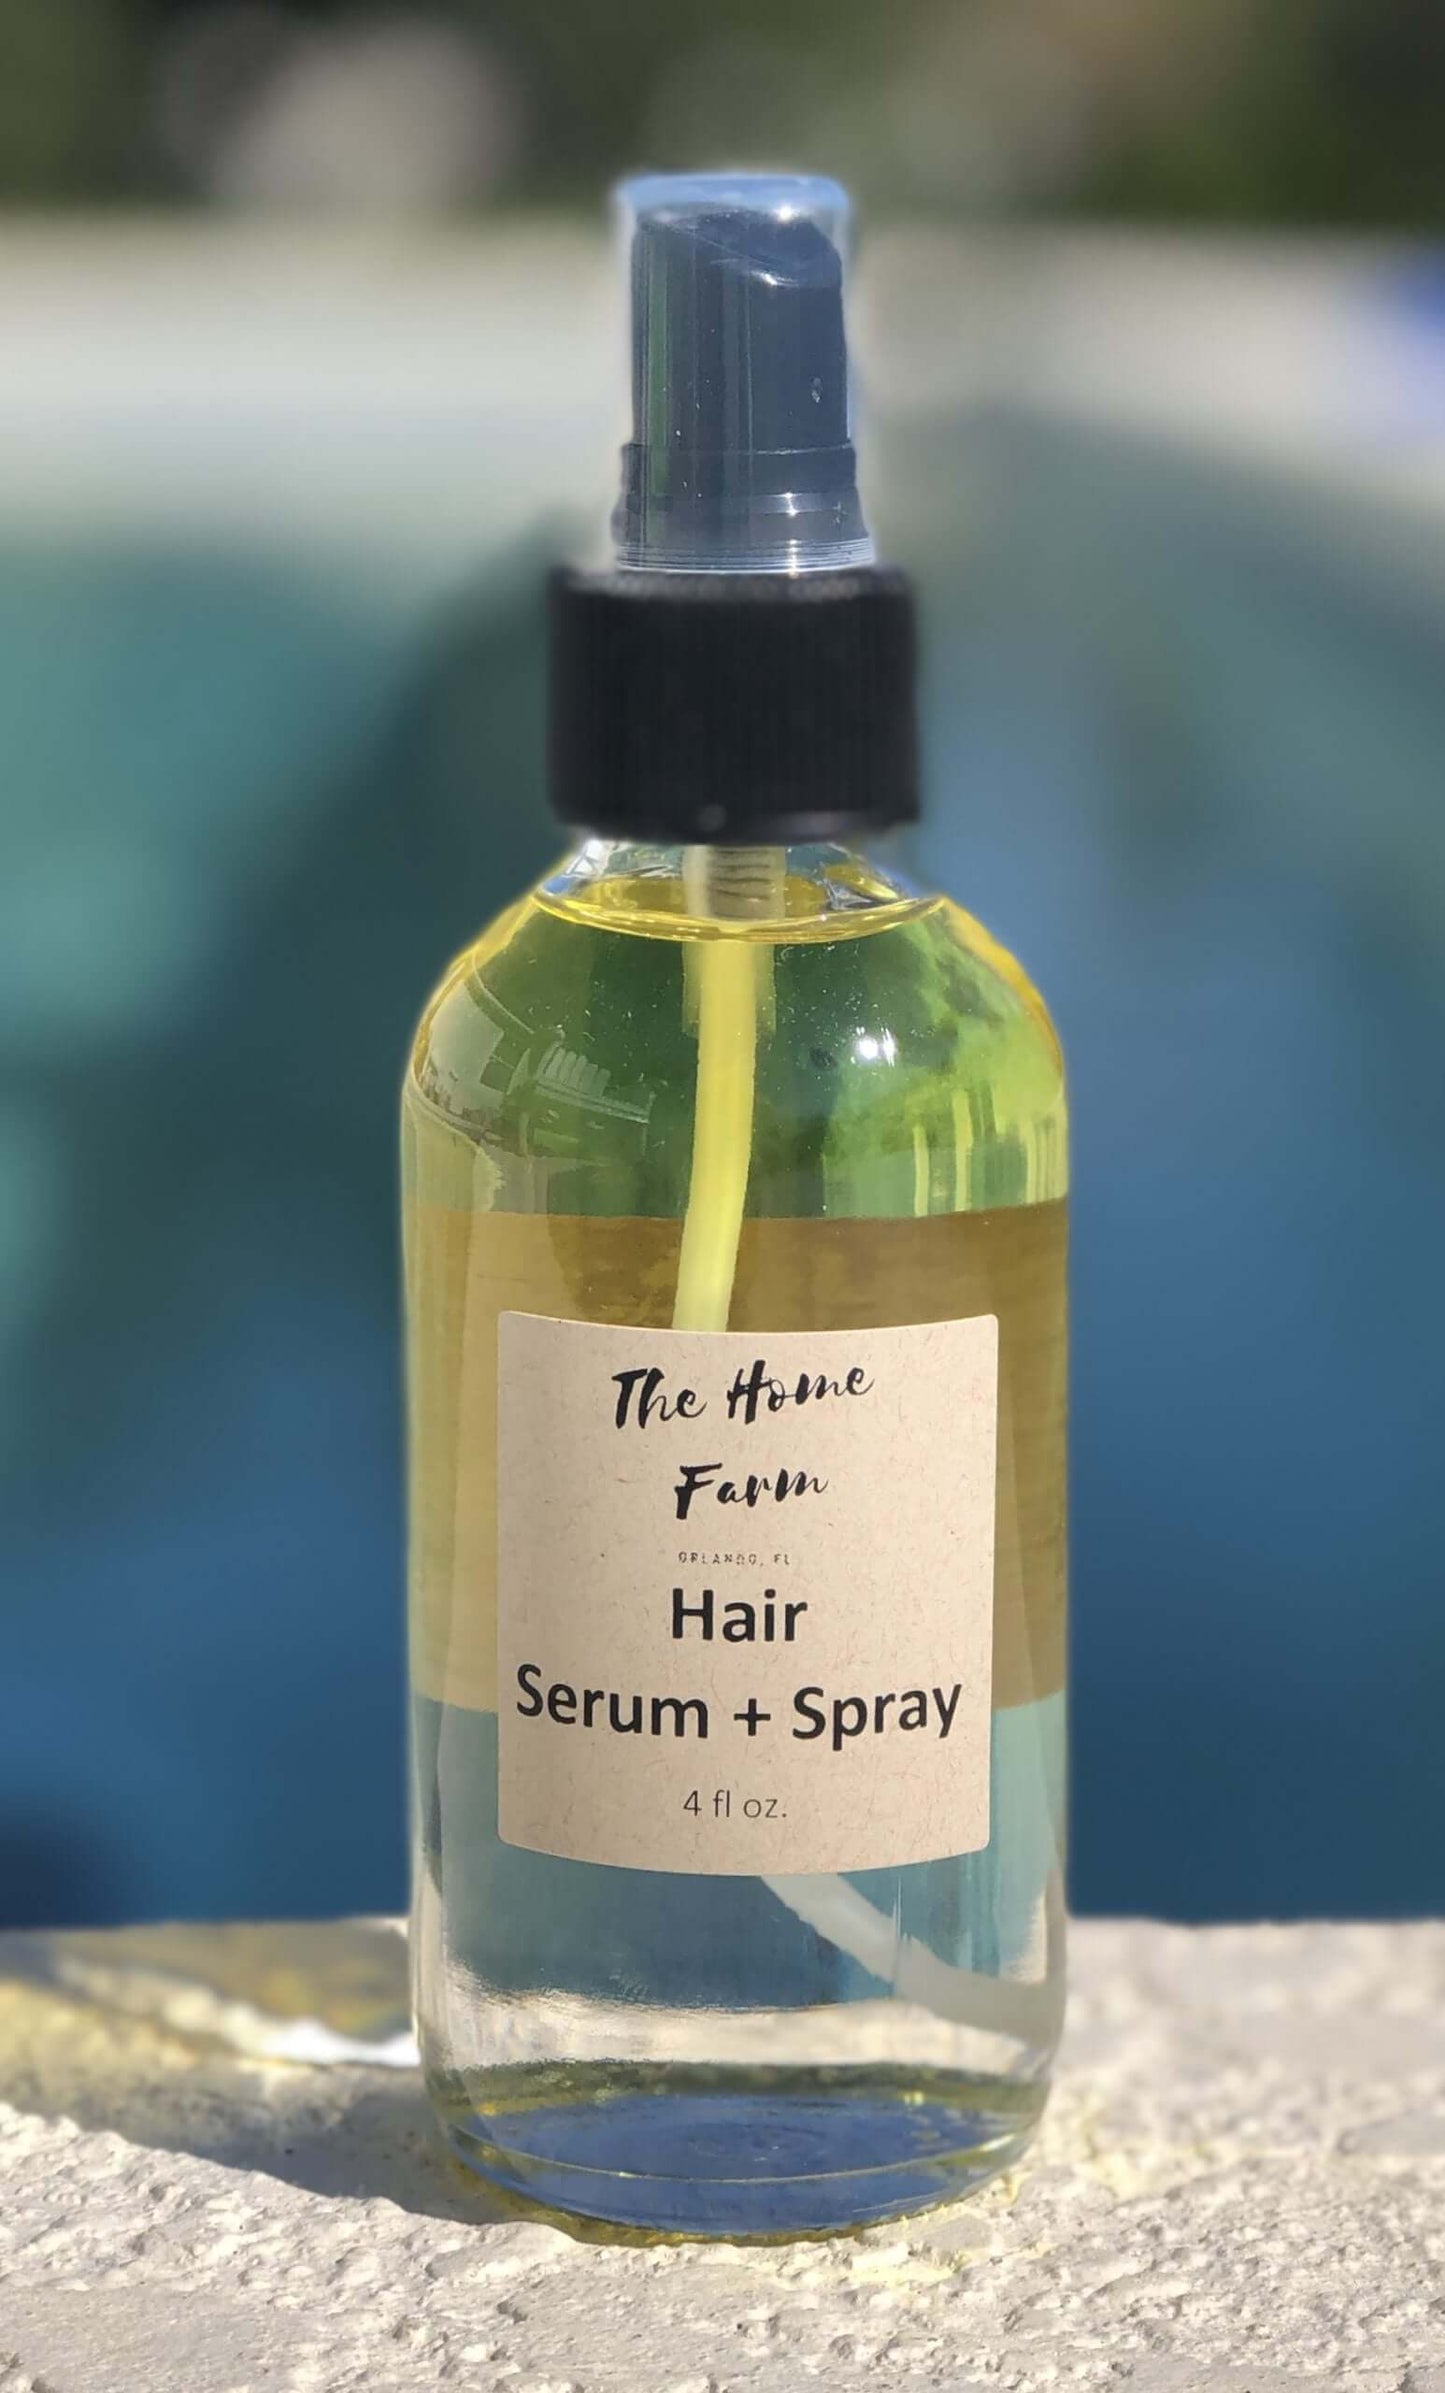 Hair Serum + Spray